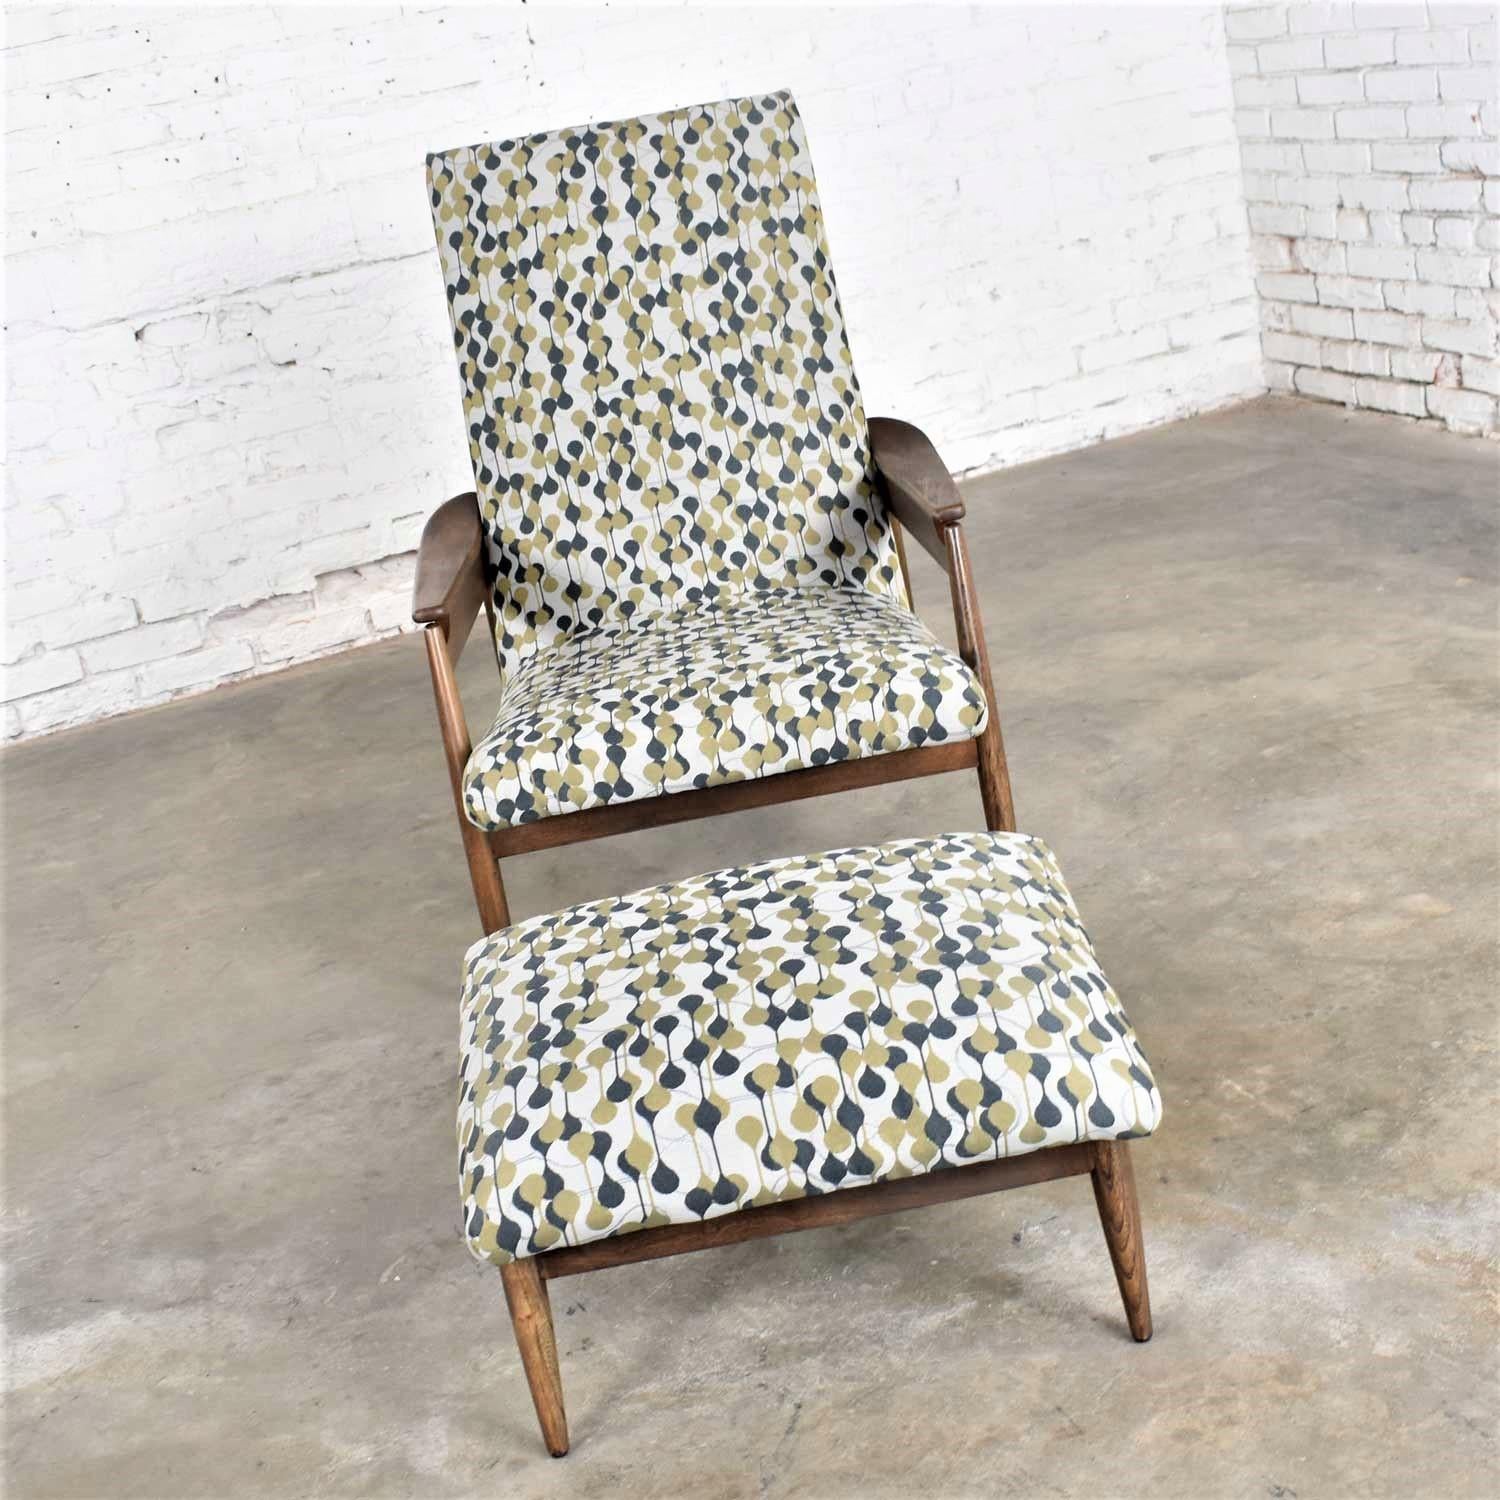 Merveilleux fauteuil de salon à haut dossier et ottoman de style scandinave MCM (a.k.a. Mid-Century Modern) attribué à Home Chair Company. Cet ensemble a été retapissé par des professionnels dans un nouveau tissu avec un fond gris taupe et des